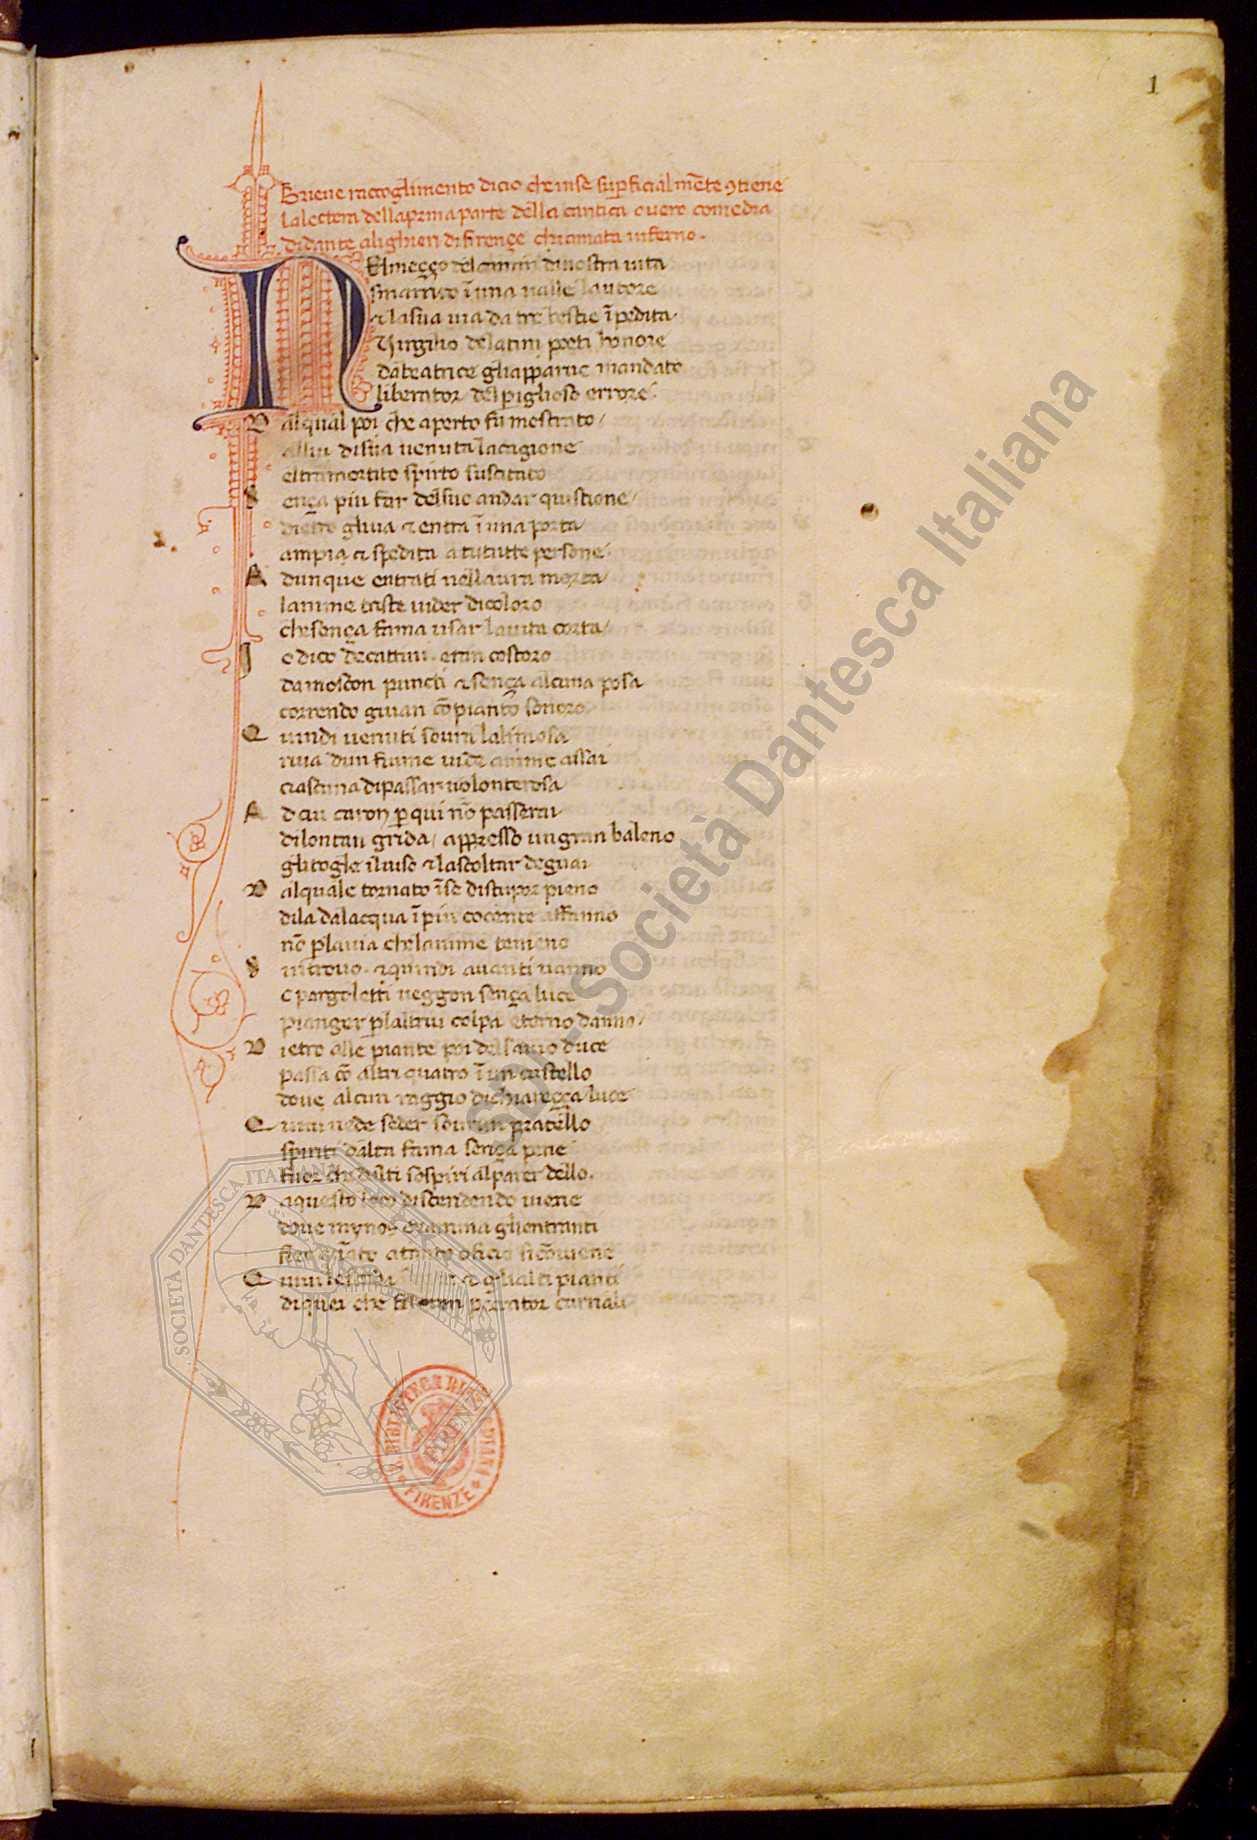 Manuscrito da Divina Comédia reescrito por Giovanni Boccaccio, do séc. XIV, preservado na Biblioteca Riccardiana.